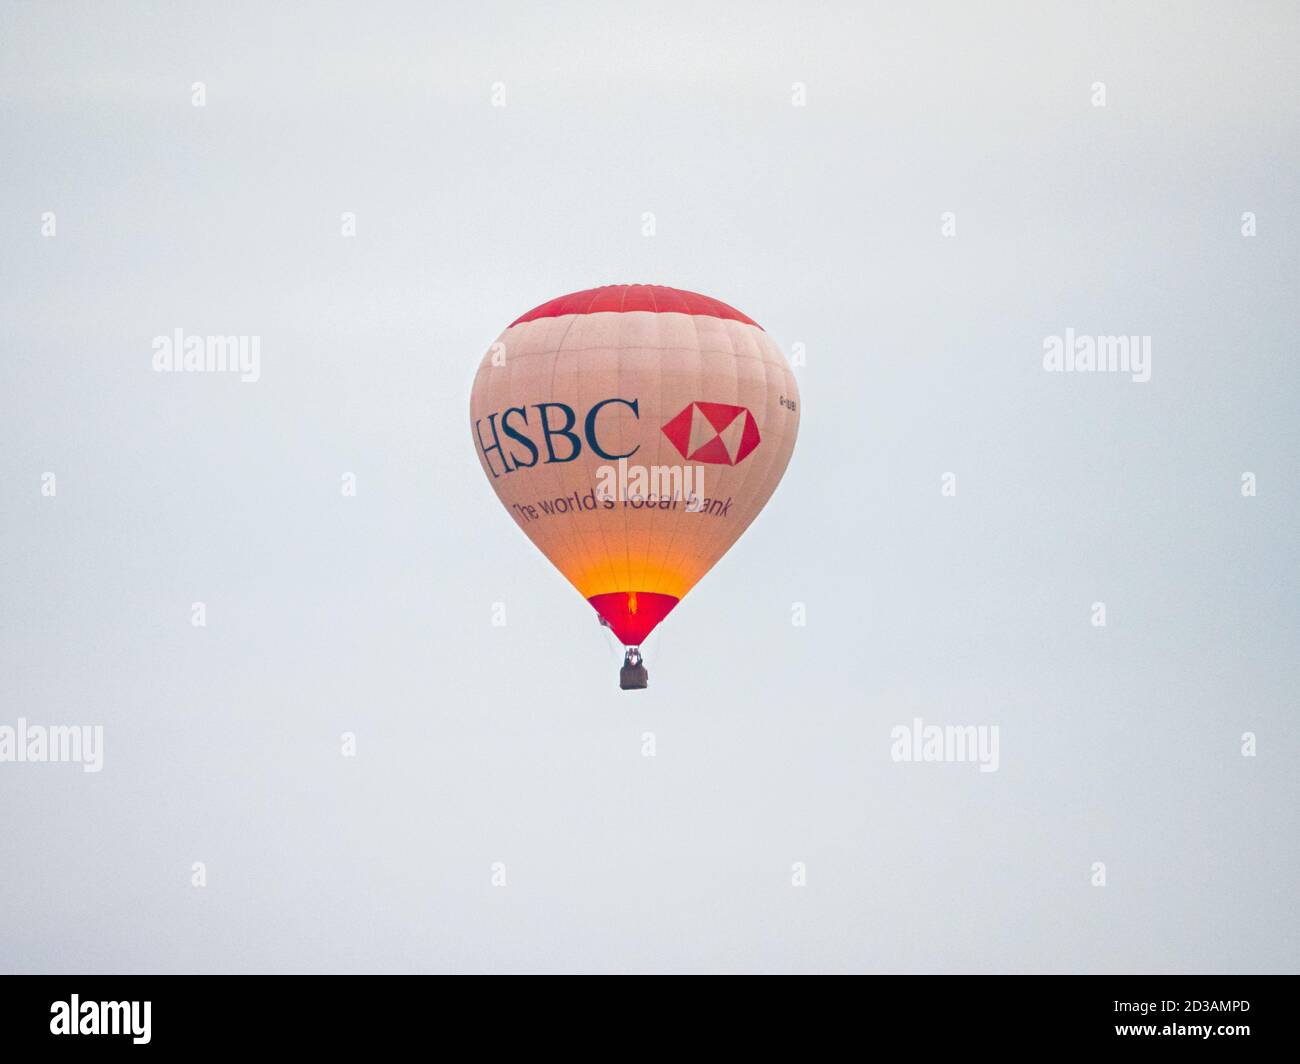 Ballon à air chaud HSBC survolant Staffordshire, Royaume-Uni Banque D'Images